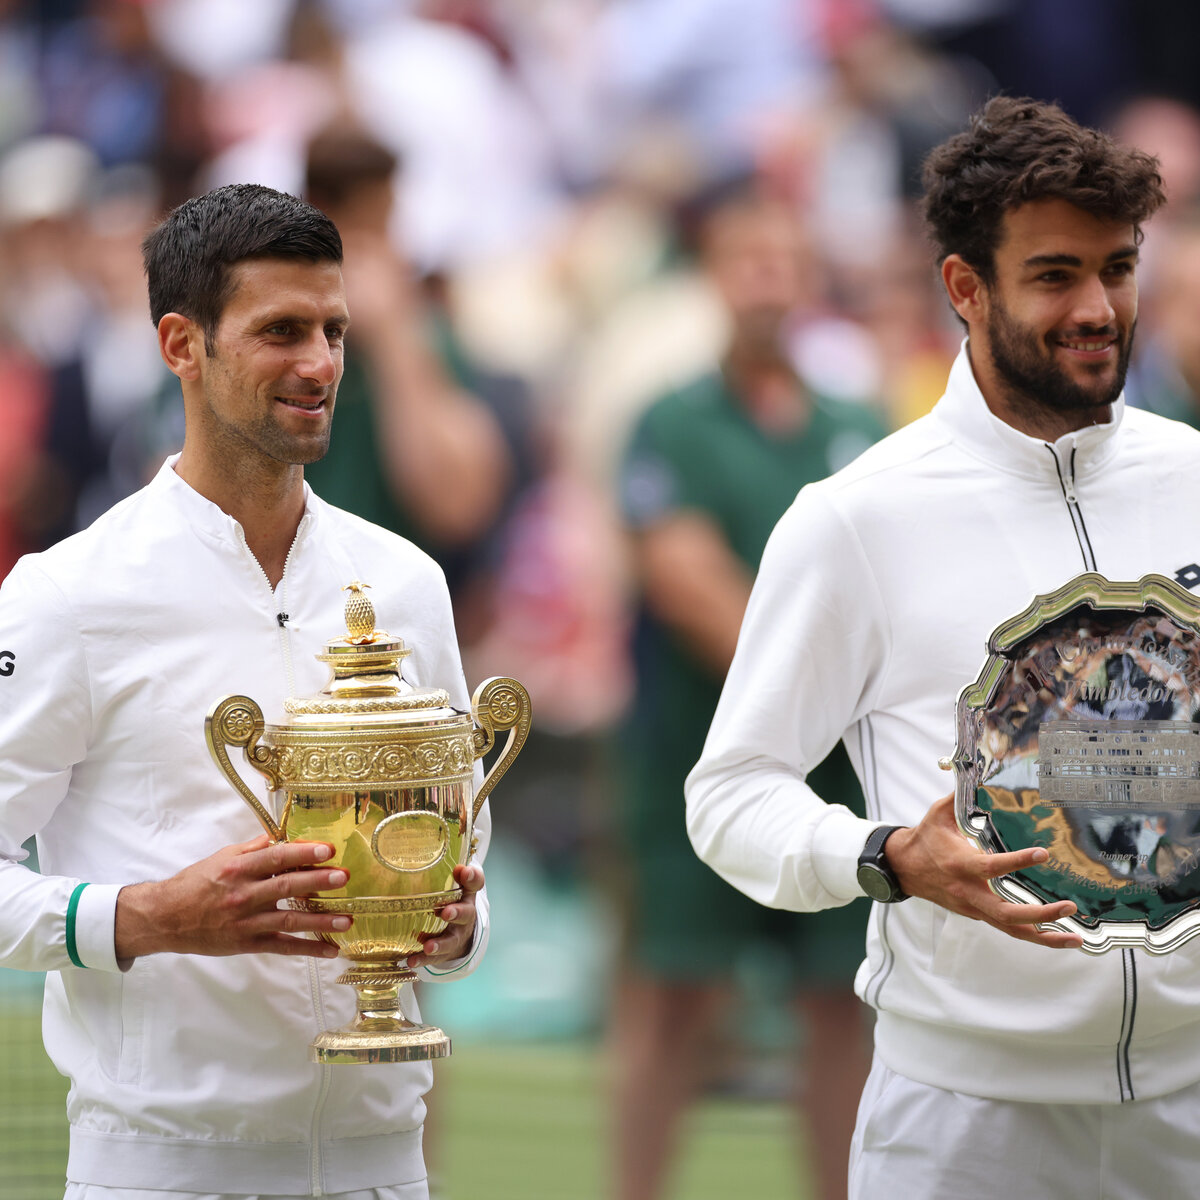 Wimbledon 2022 Alle Infos, TV, Favoriten, Preisgeld · tennisnet